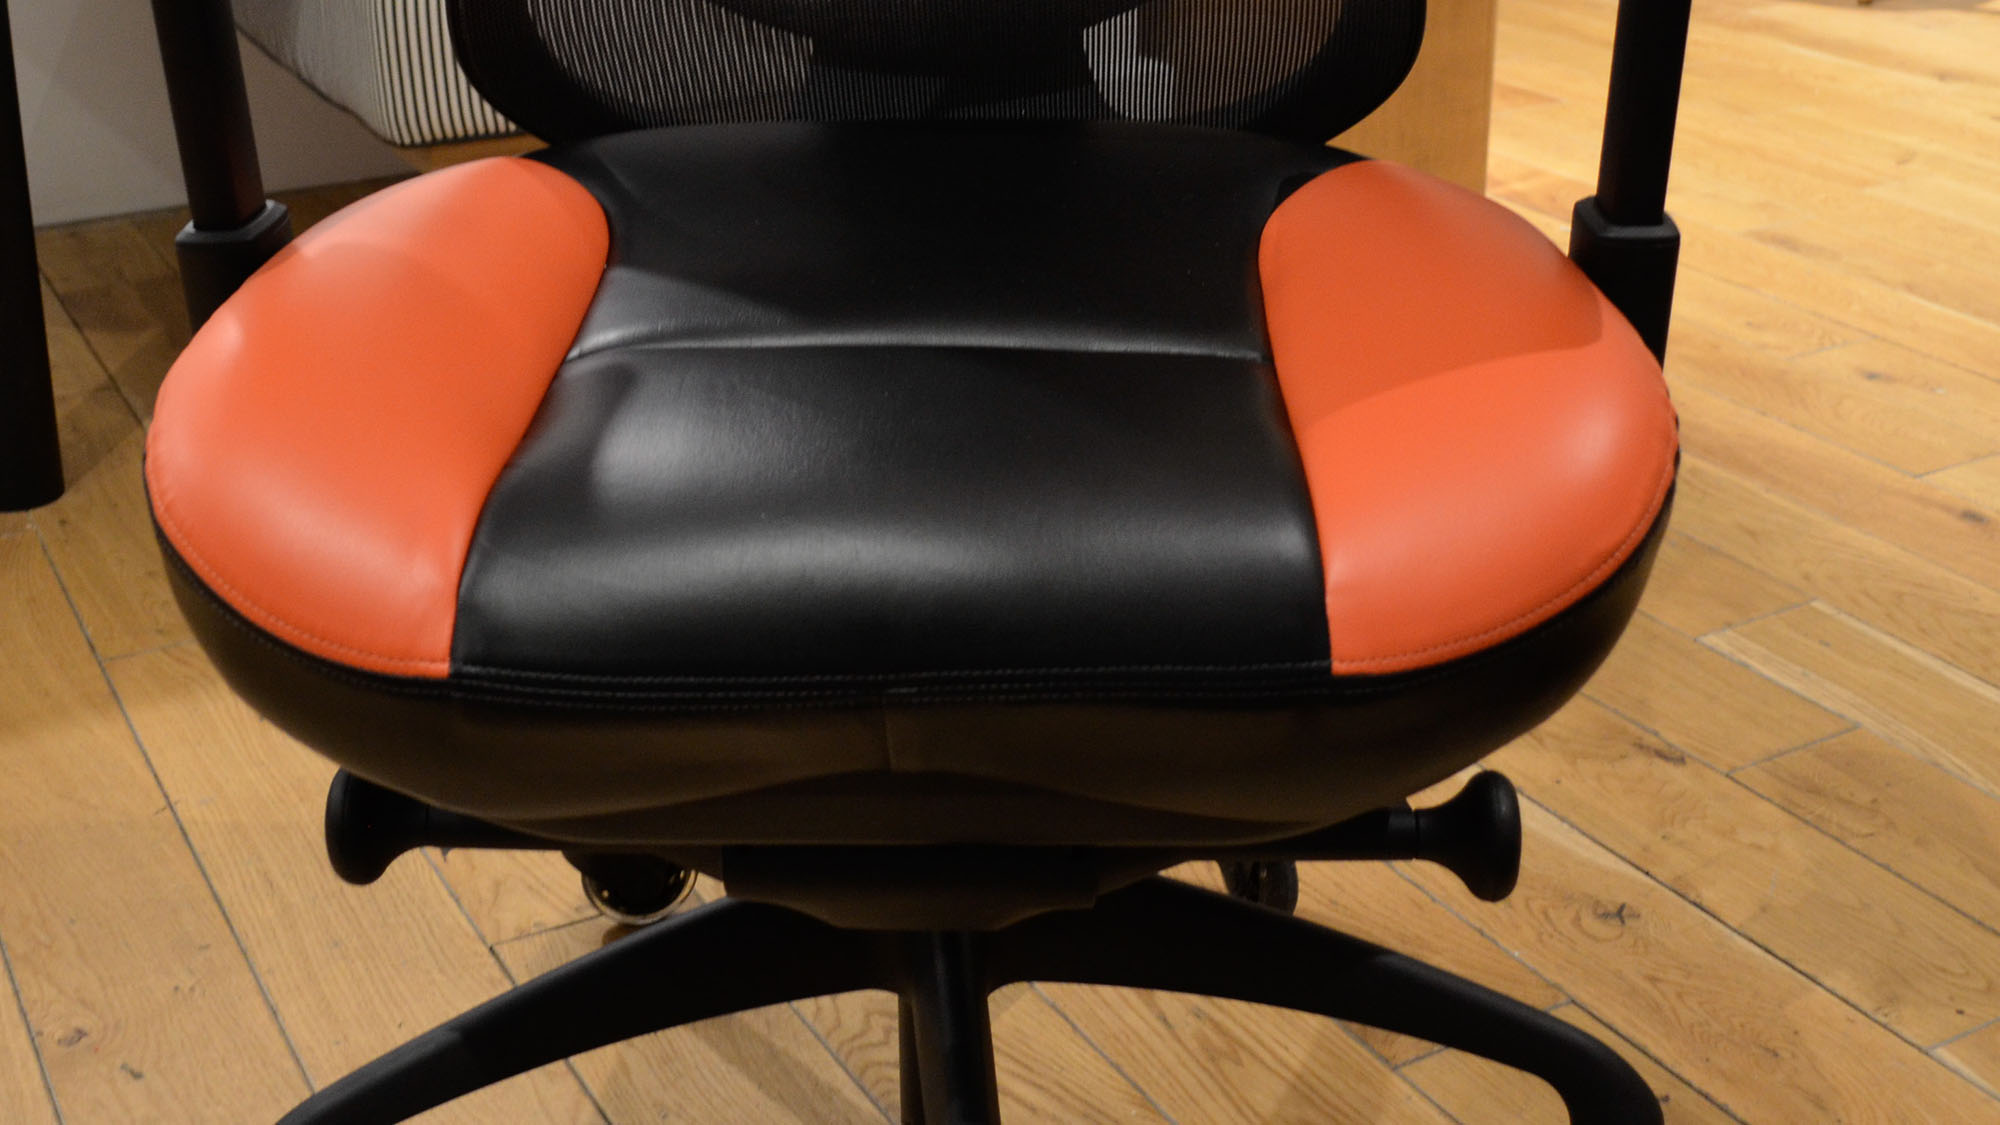 A BodyBilt G7 gaming chair in an office